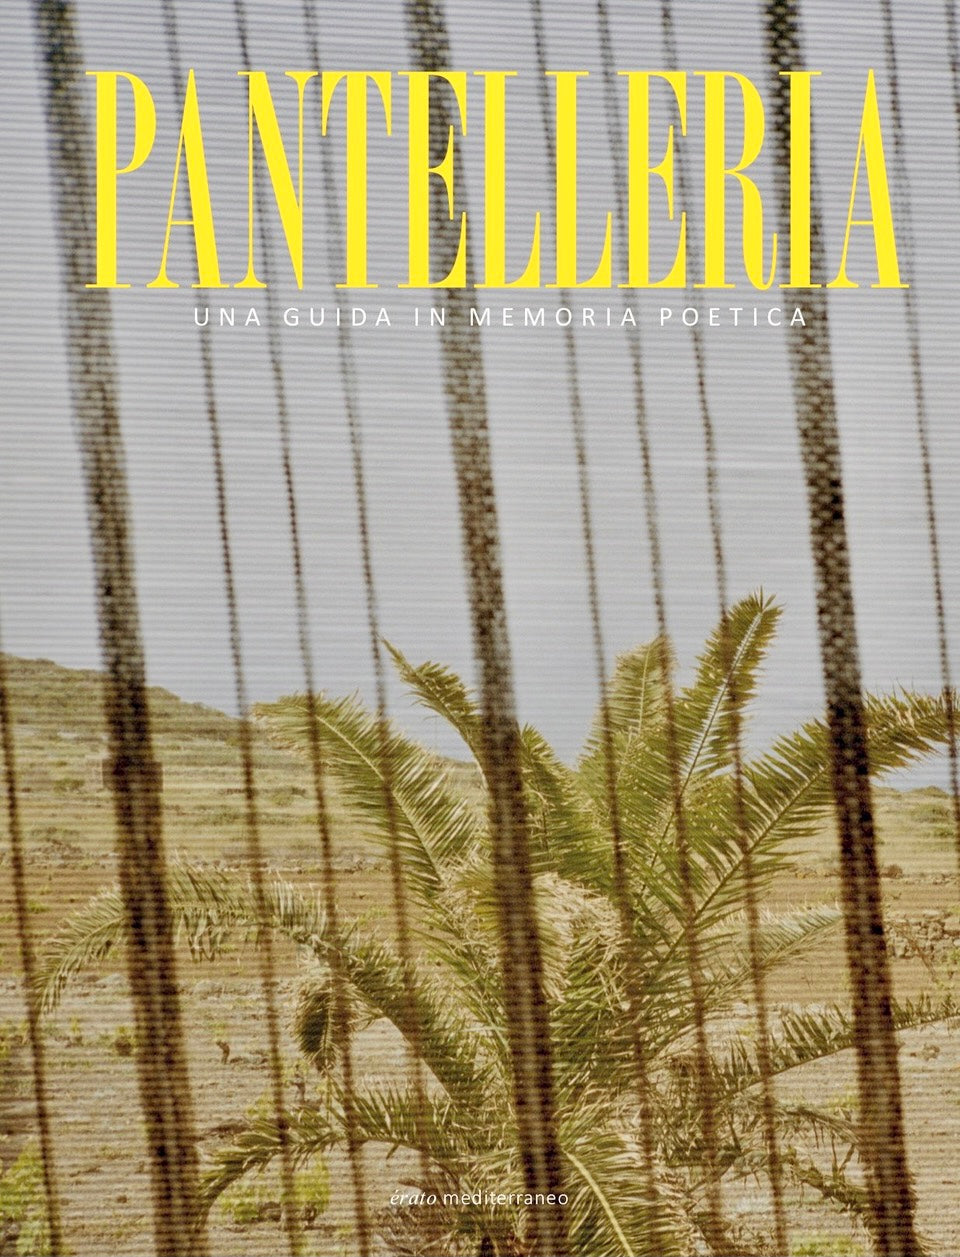 Pantelleria - una guida in memoria poetica